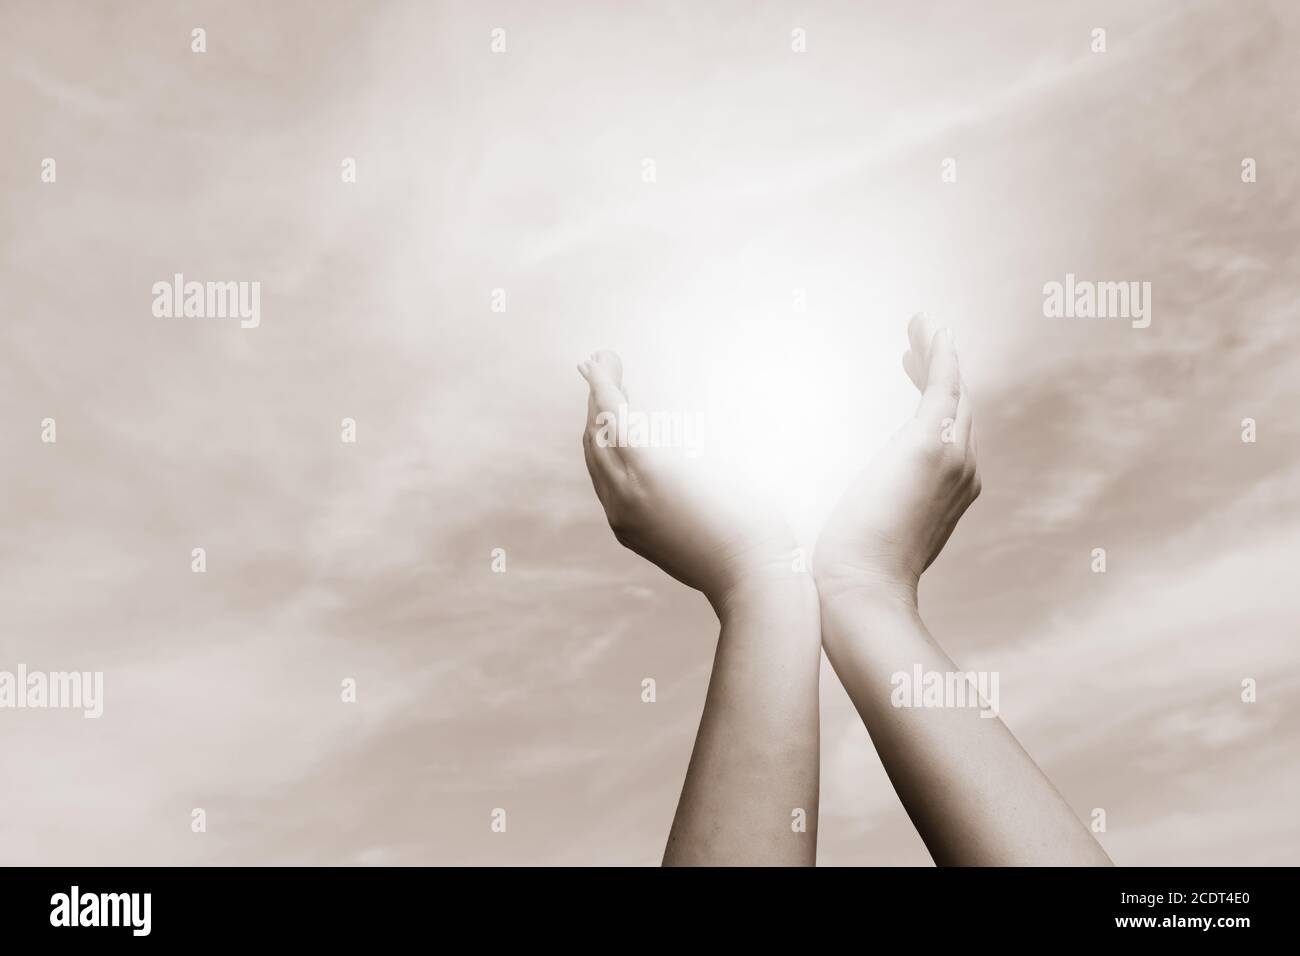 Mains levées prenant le soleil sur ciel nuageux. Concept de spiritualité, de bien-être, d'énergie positive Banque D'Images